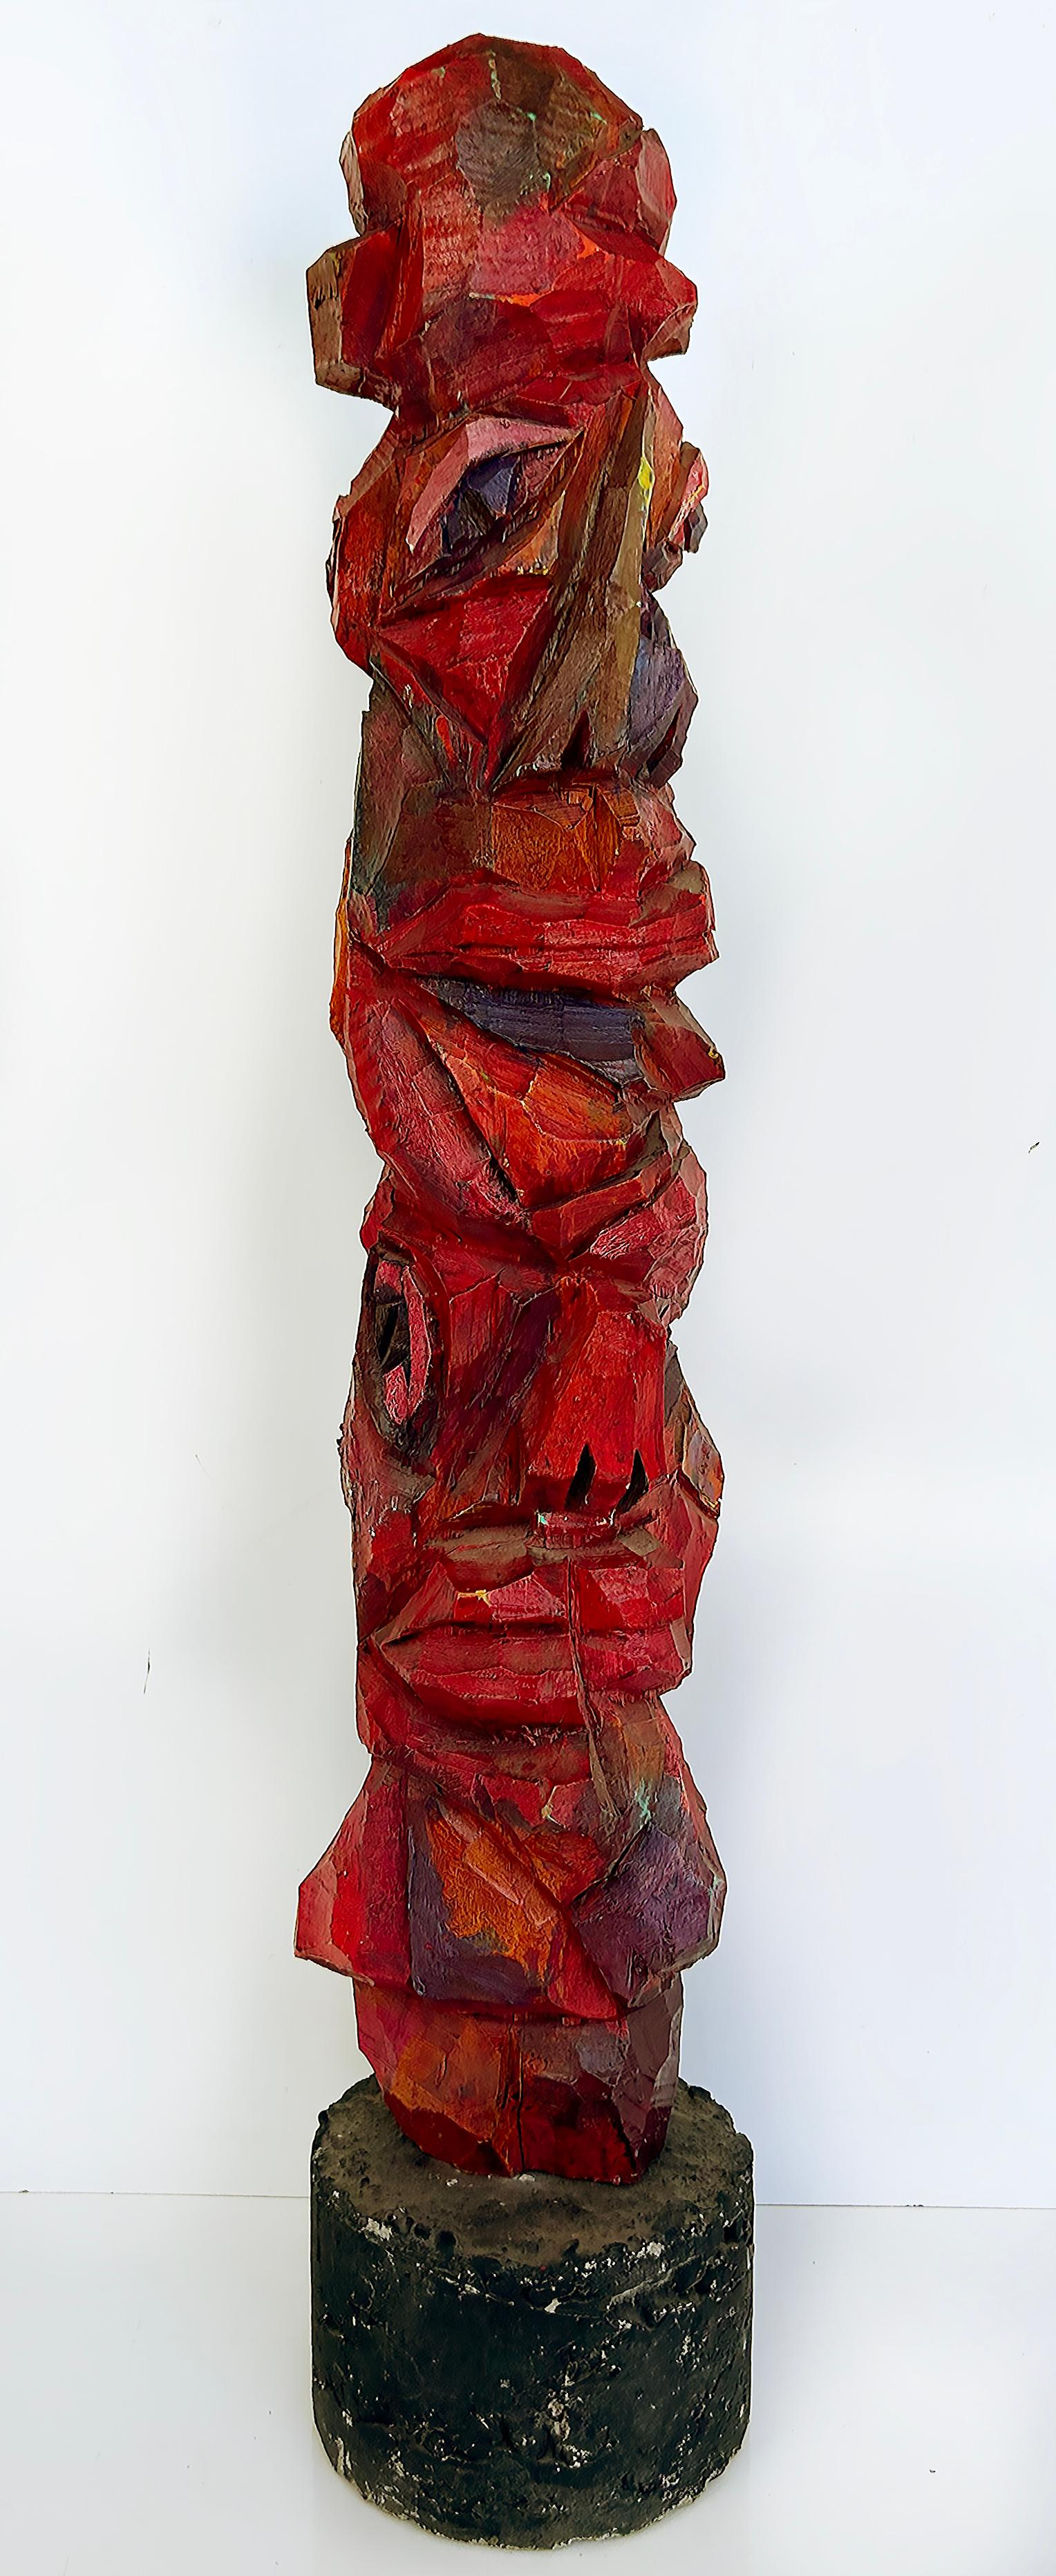 Vintage Tom Cramer Primitive Carved Totem Folk Art Sculpture, Polychromed

Nous proposons à la vente une sculpture figurative de Tom Cramer, art populaire américain primitif, sculptée à la main, peinte et polychromée. Il s'agit d'une acquisition